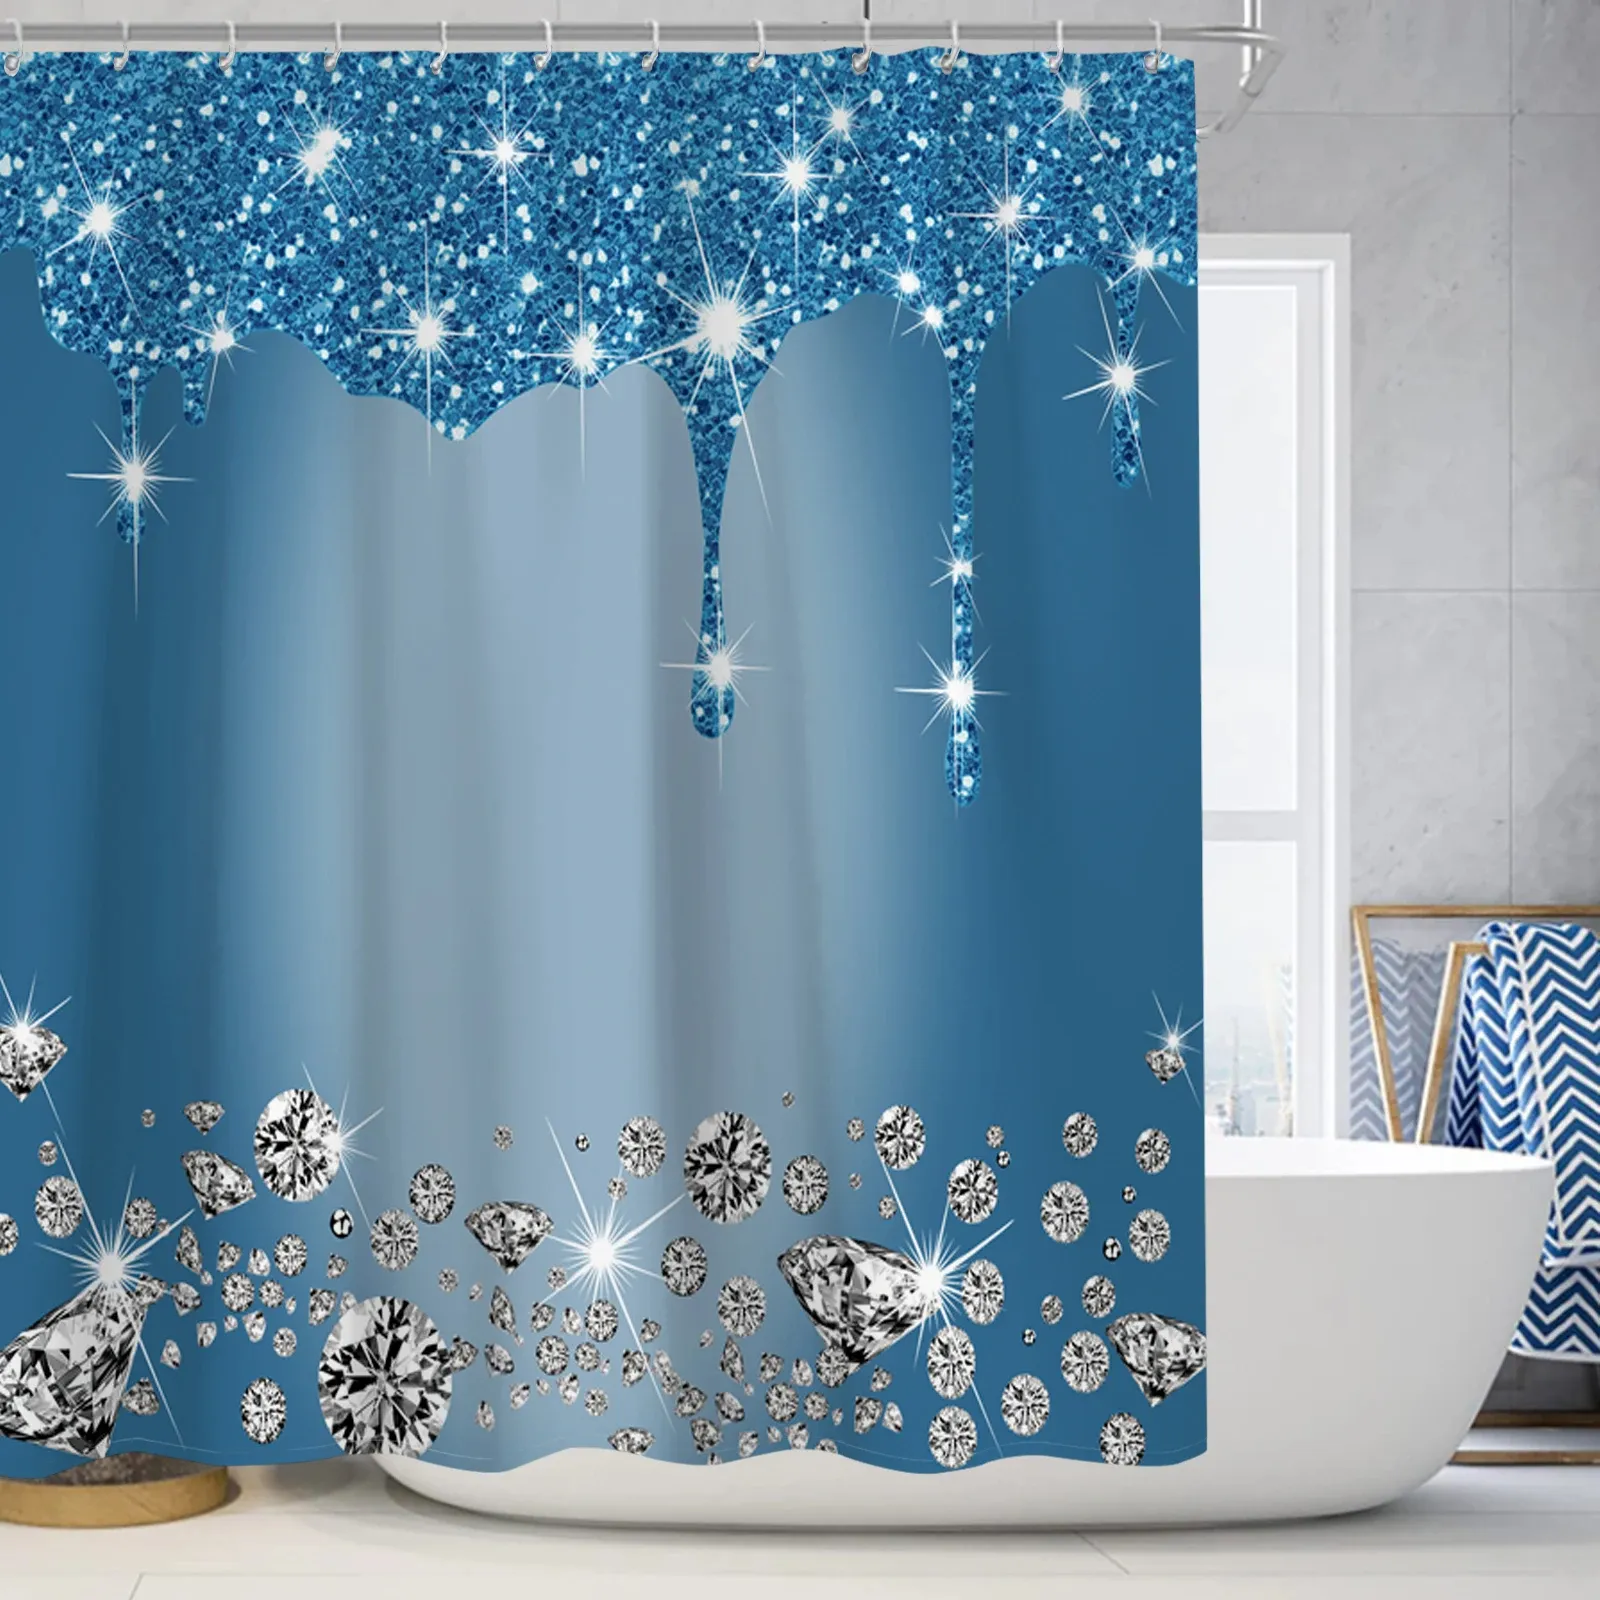 Luxus funkelnder Diamant-Duschvorhang-Set mit Teppich und Toilettensitz